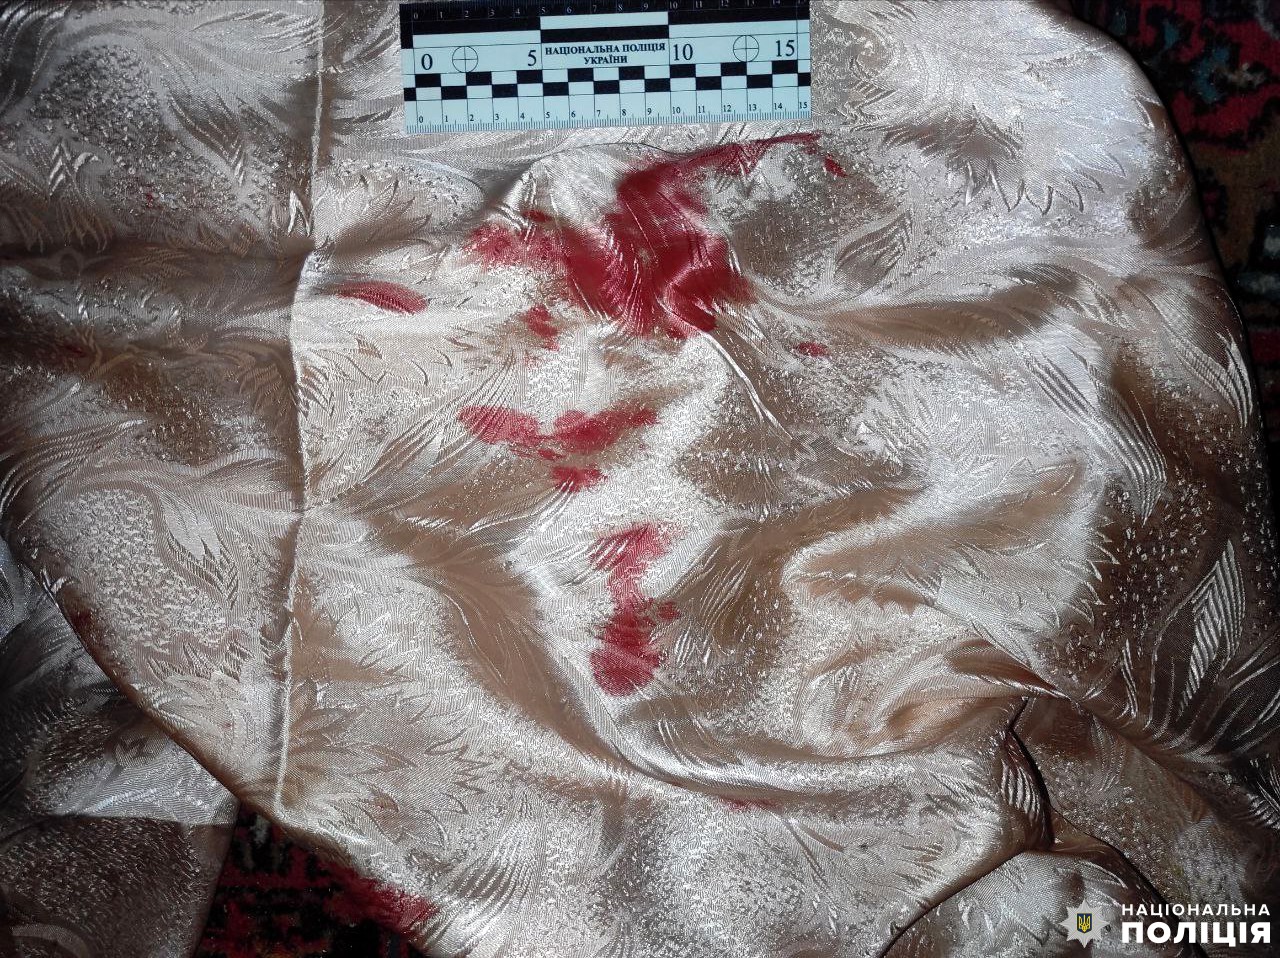 Під час сварки син побив матір: поліцейські затримали жителя Рівненського району